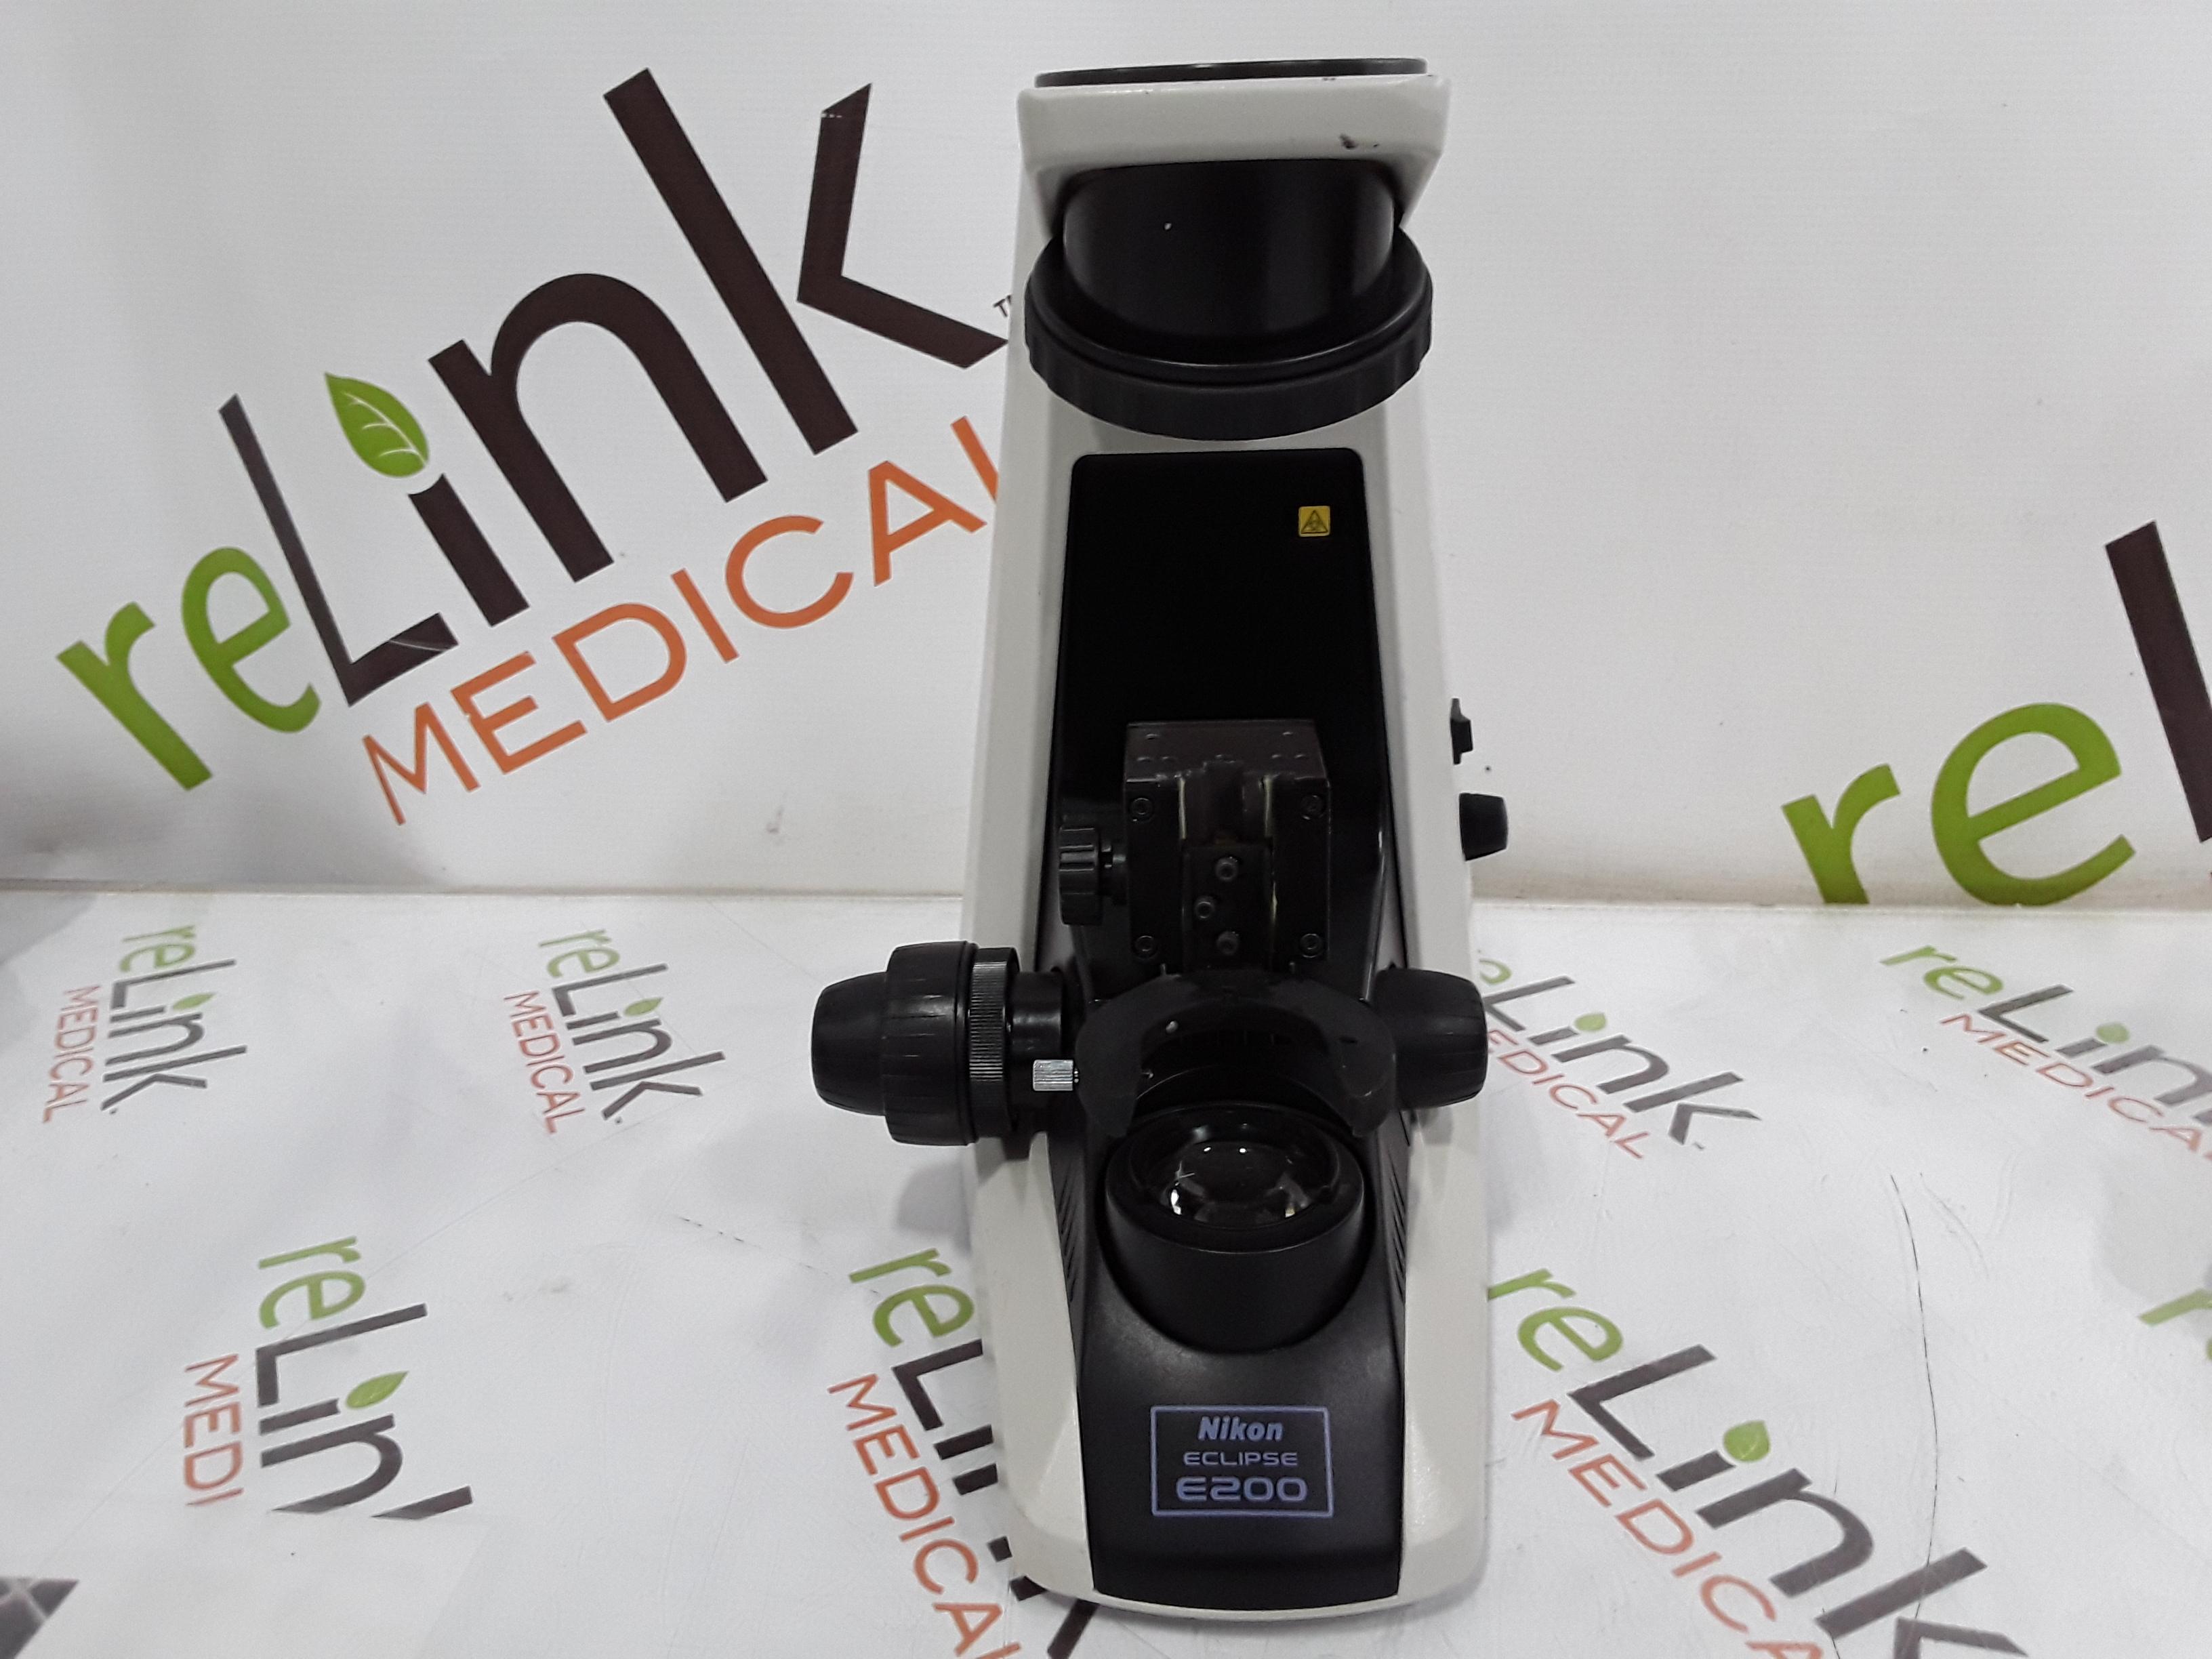 Nikon E200 Eclipse Microscope - 365098